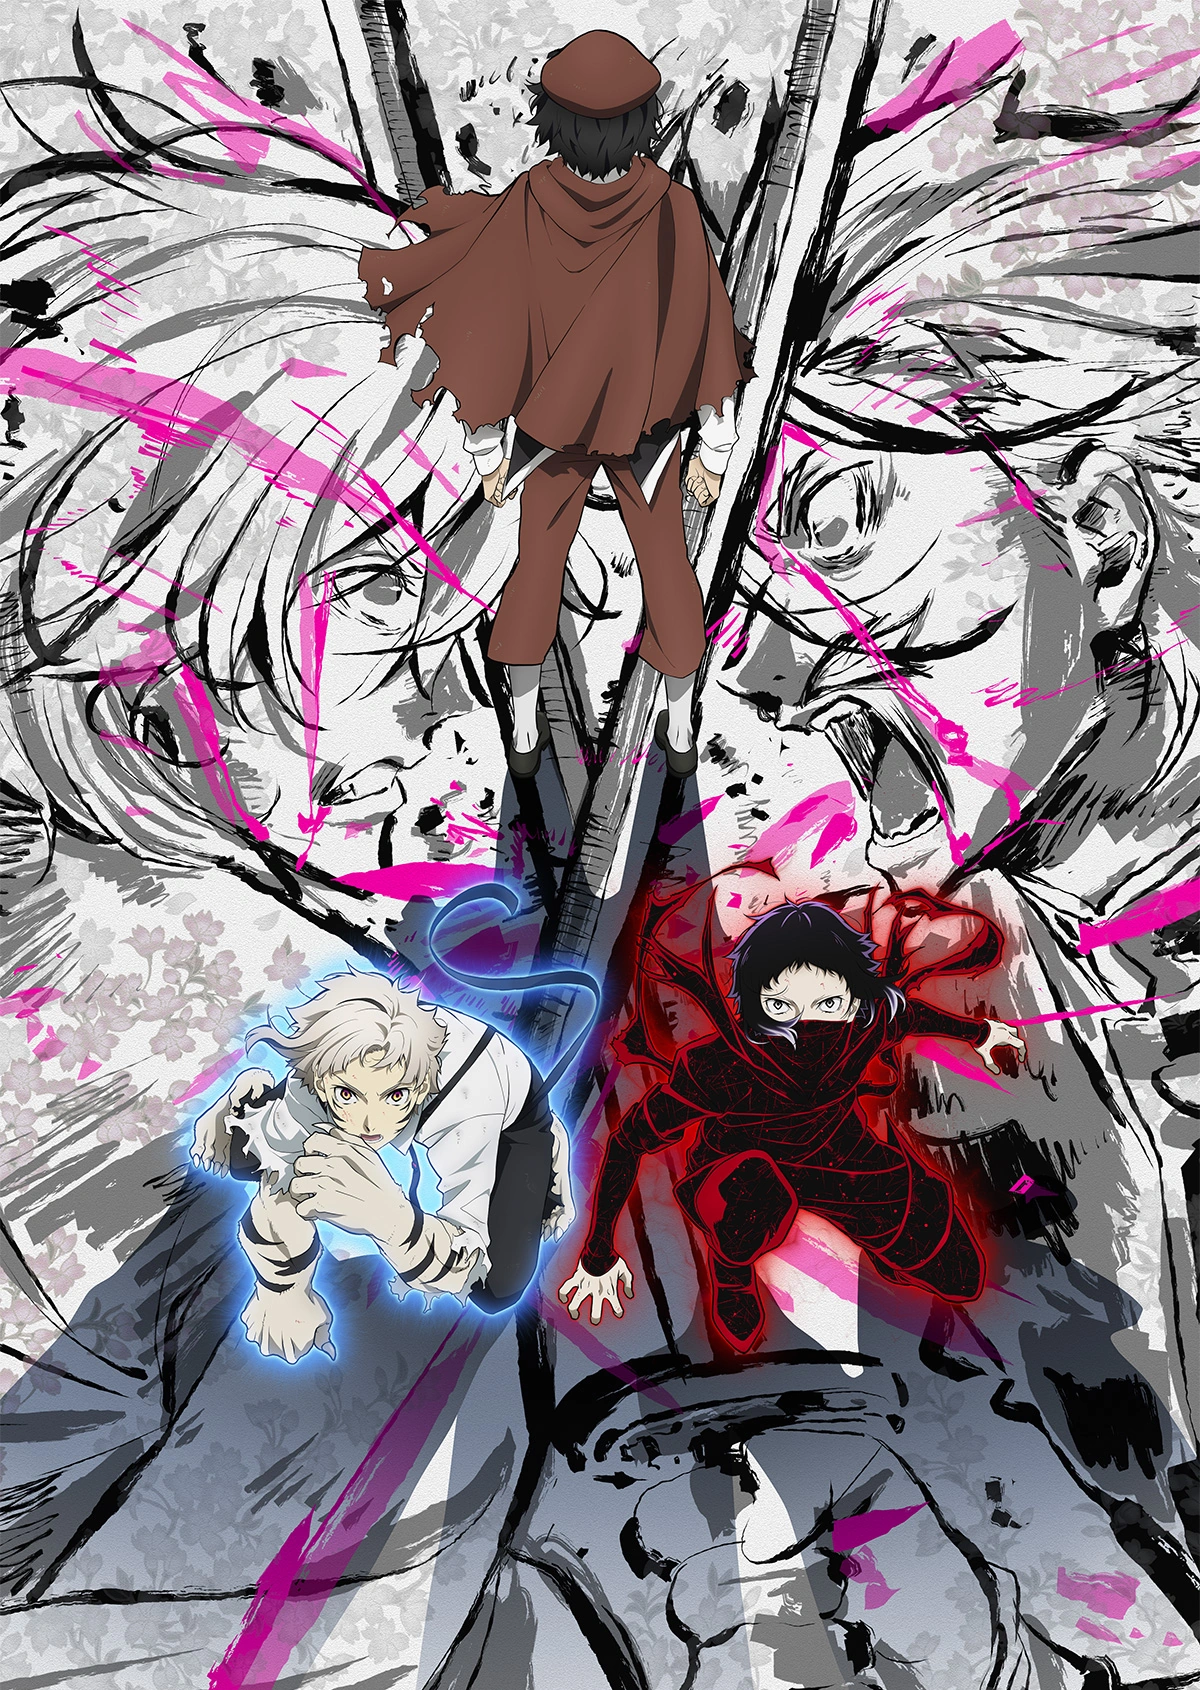 Animes 2021: Retornos, continuação e spinoffs de janeiro - Heroi X